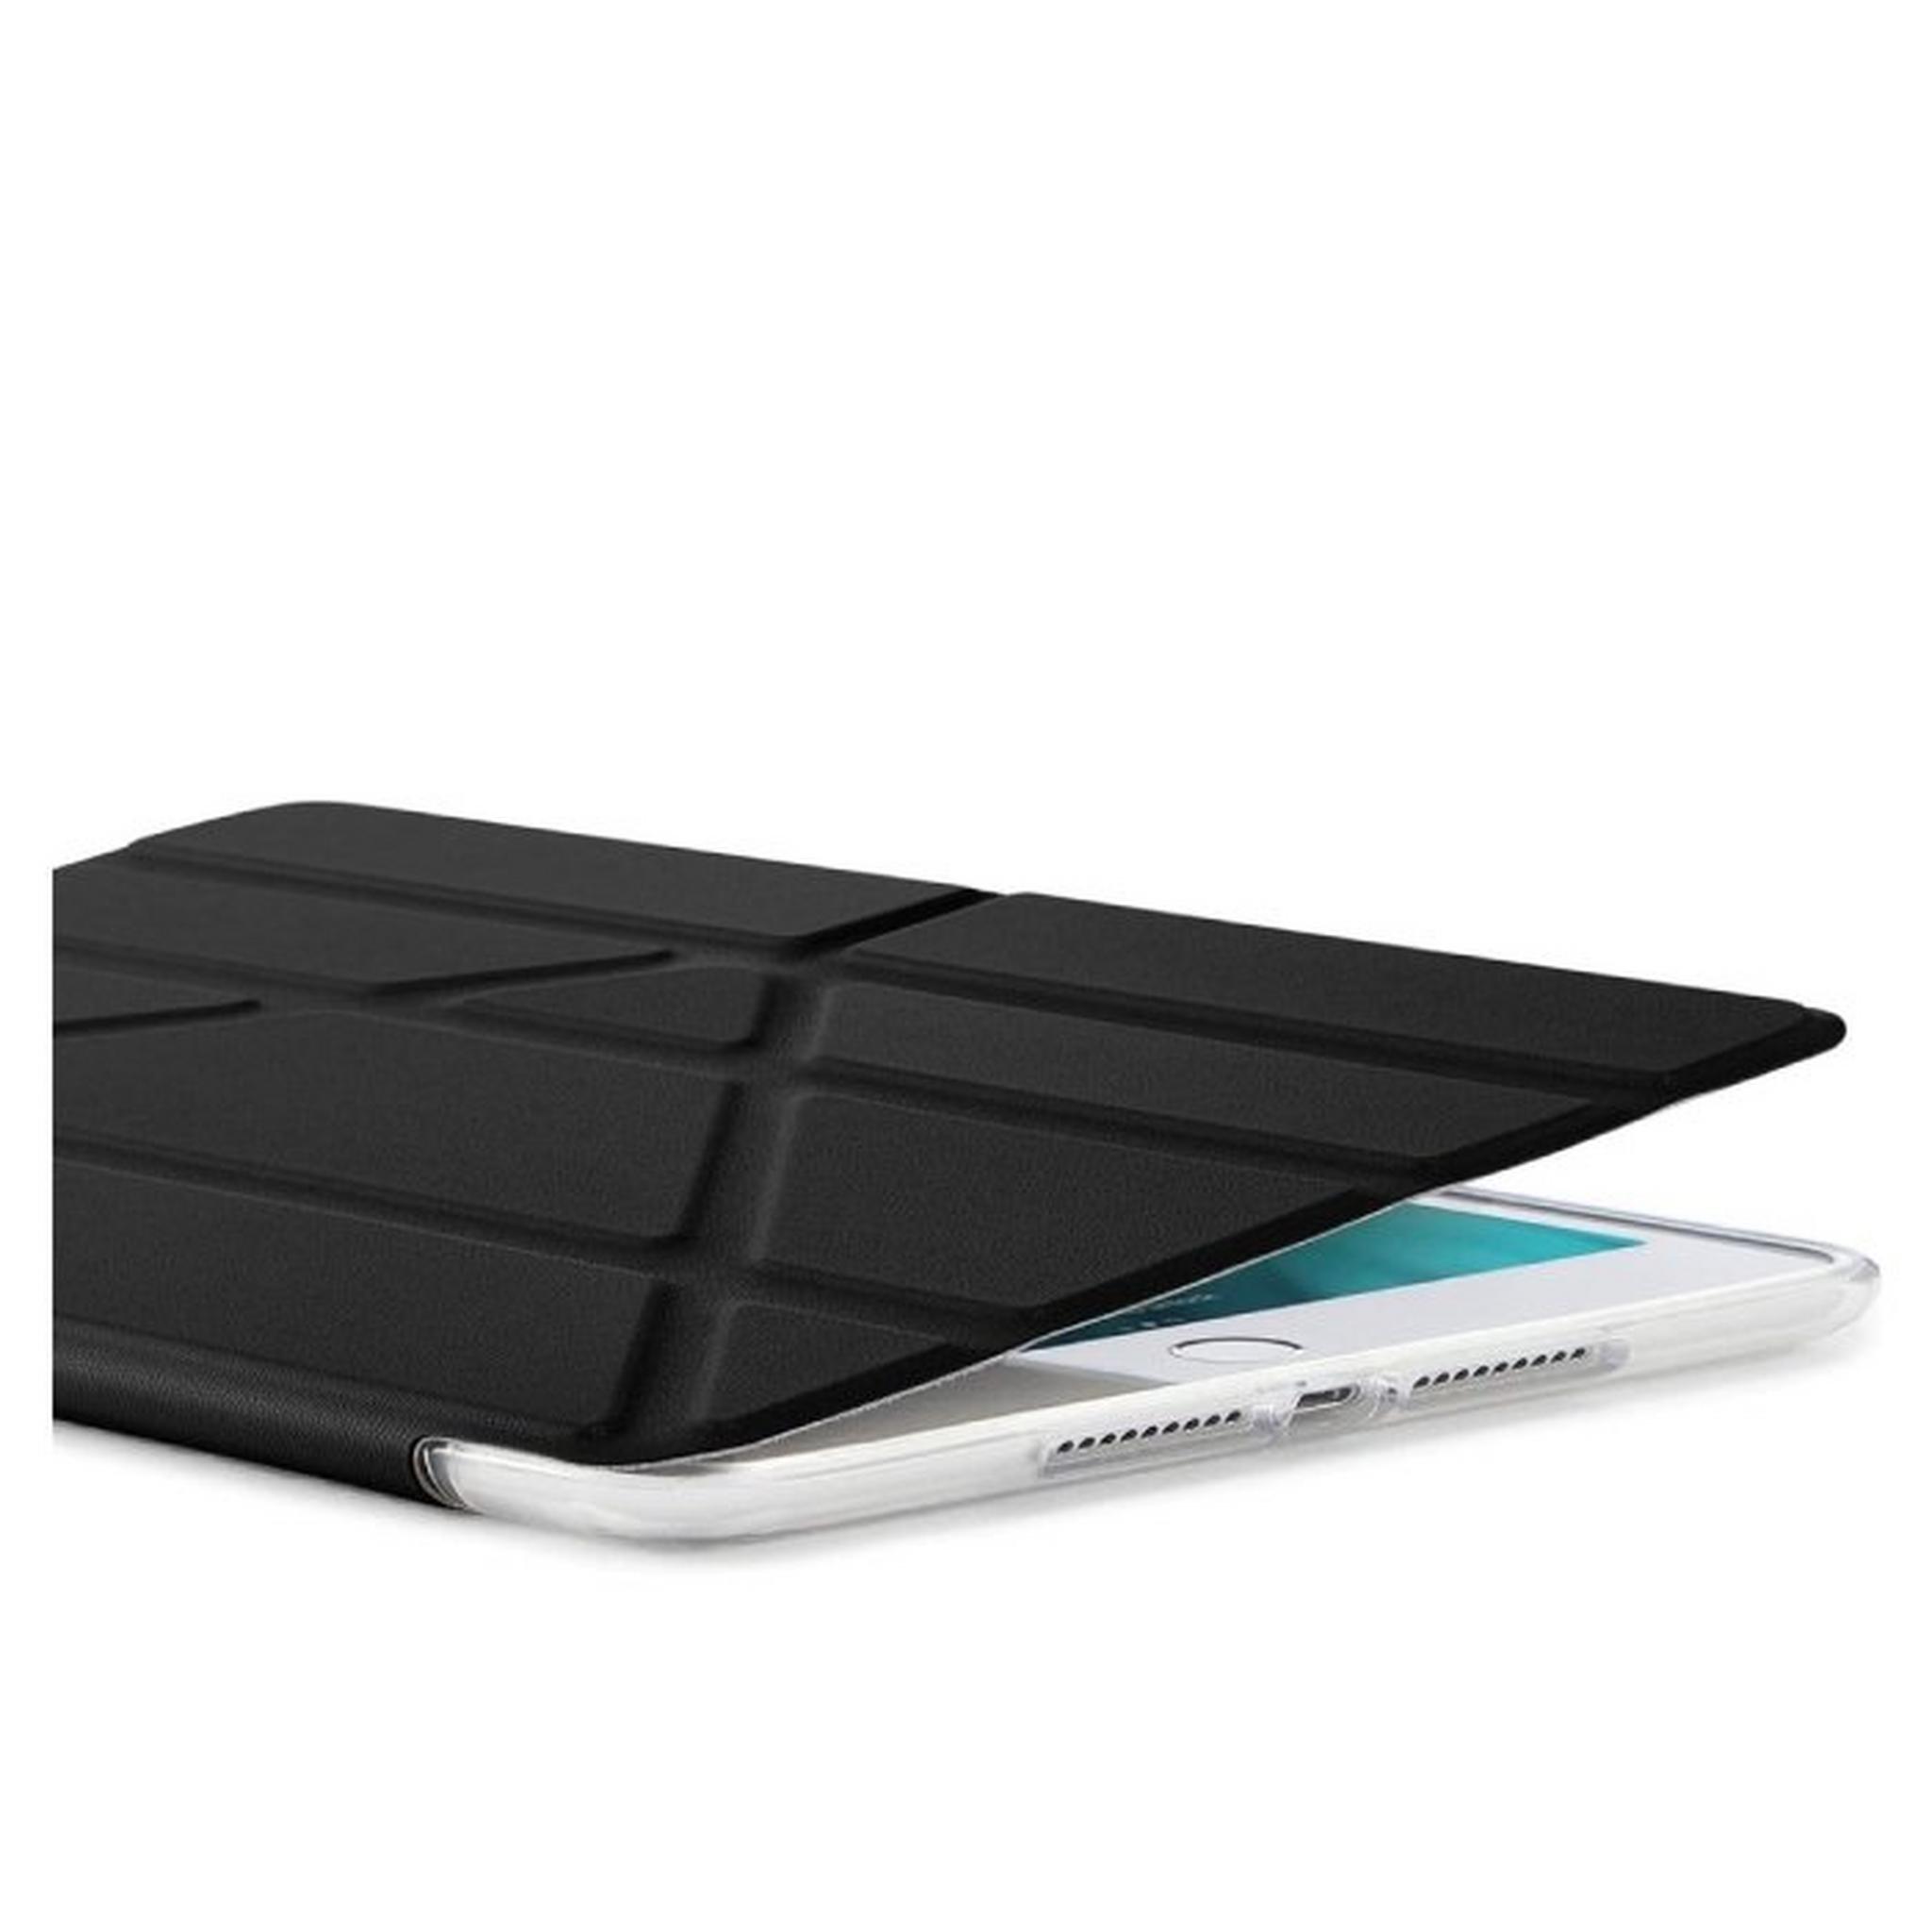 Pipetto Origami iPad Mini 6 Case - Black